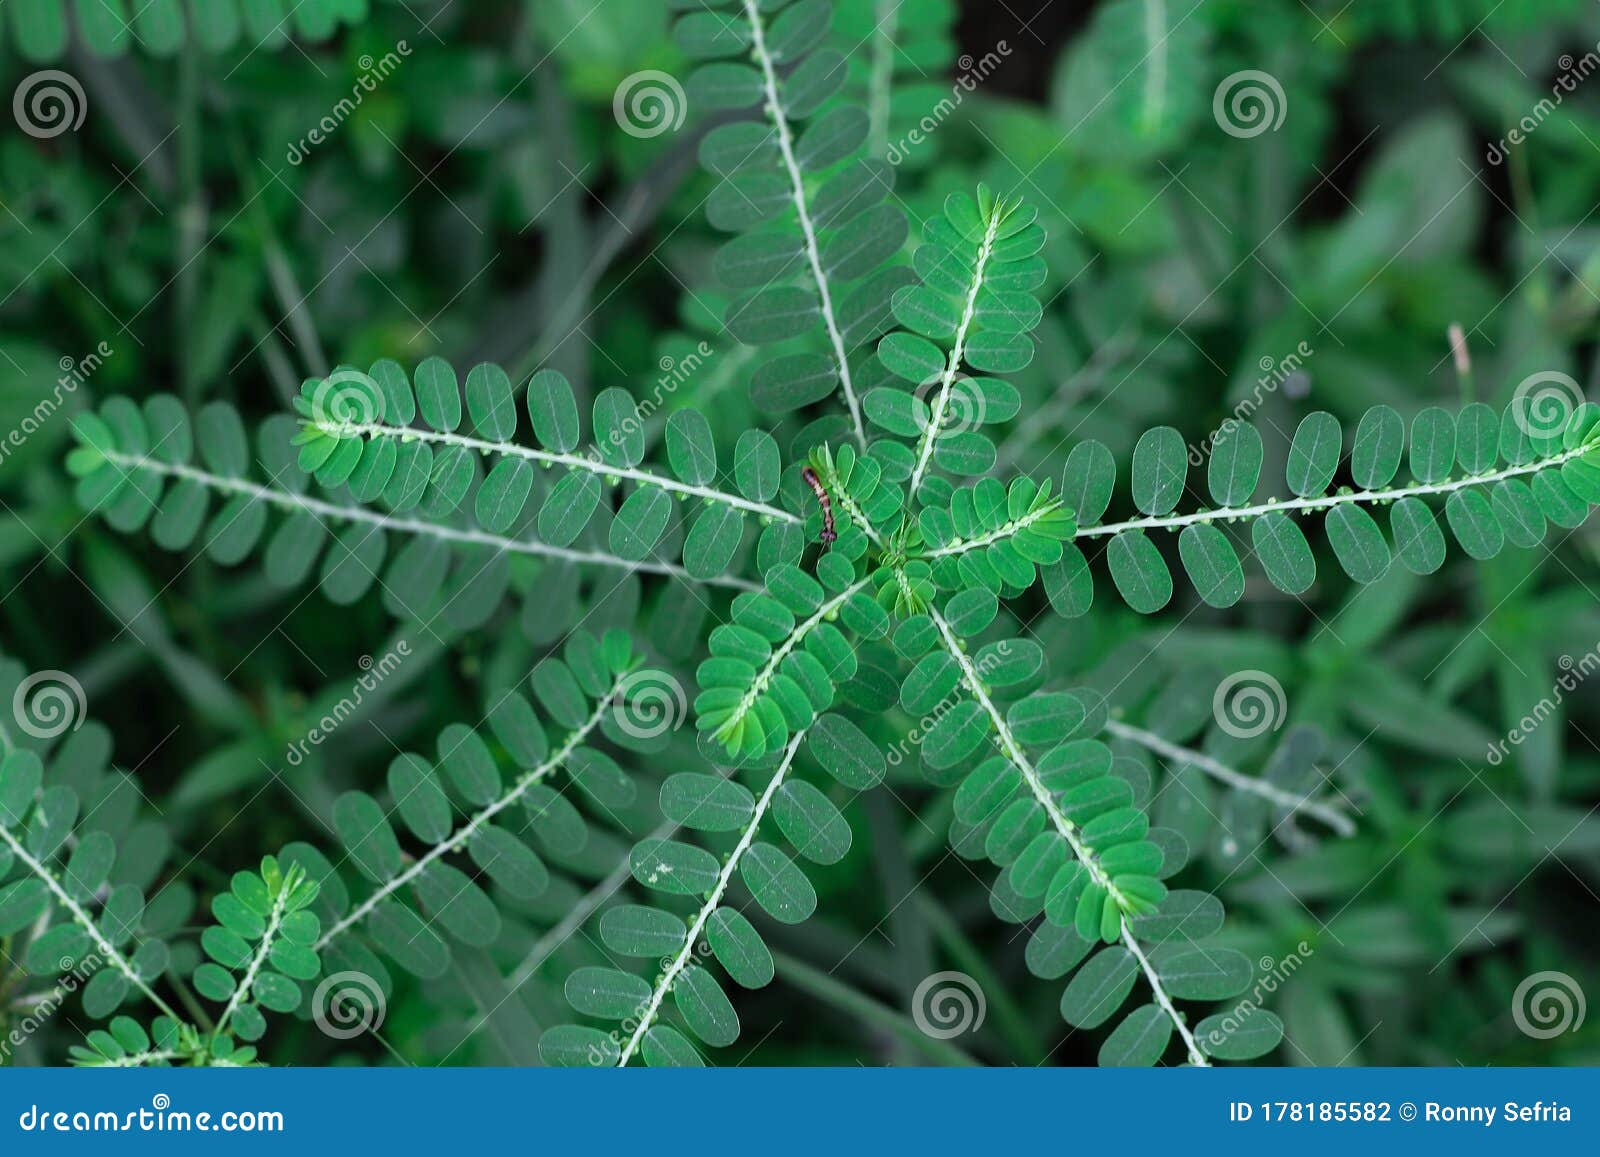 niruri phyllanthus